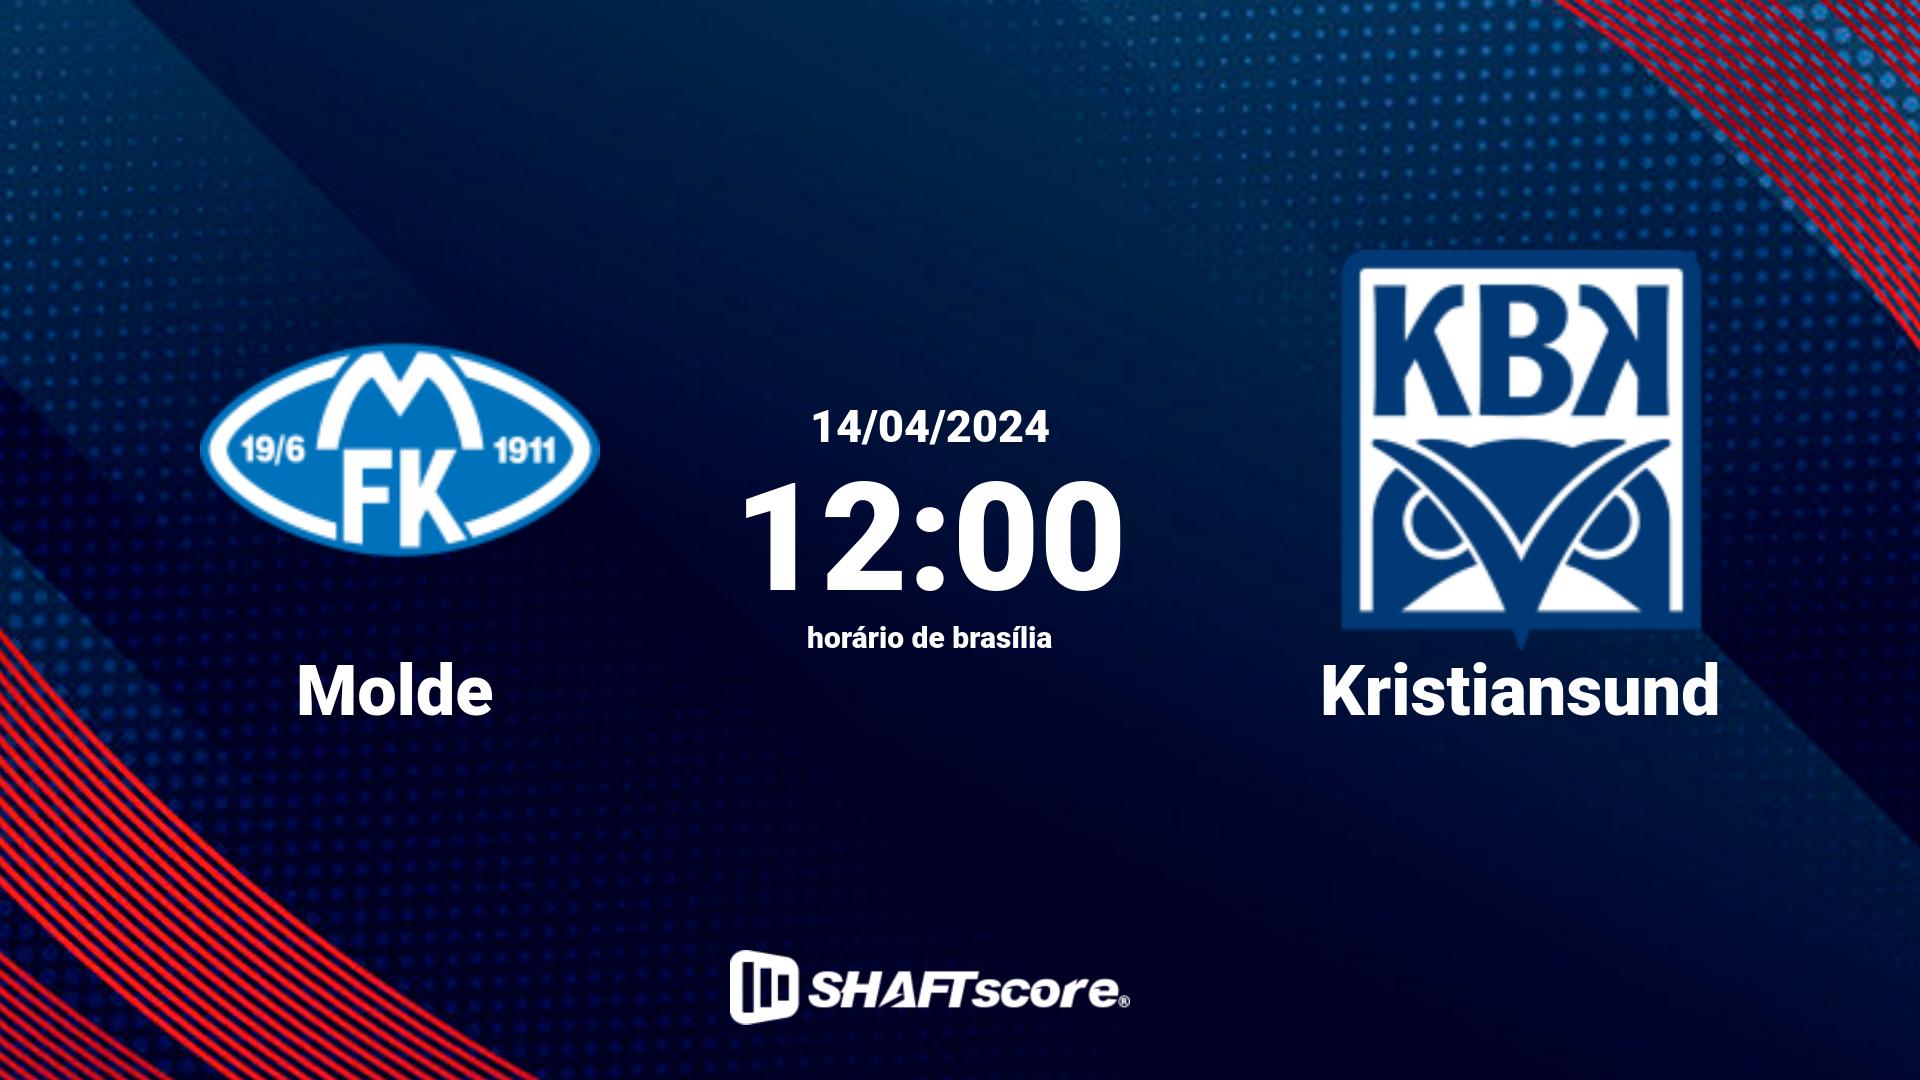 Estatísticas do jogo Molde vs Kristiansund 14.04 12:00